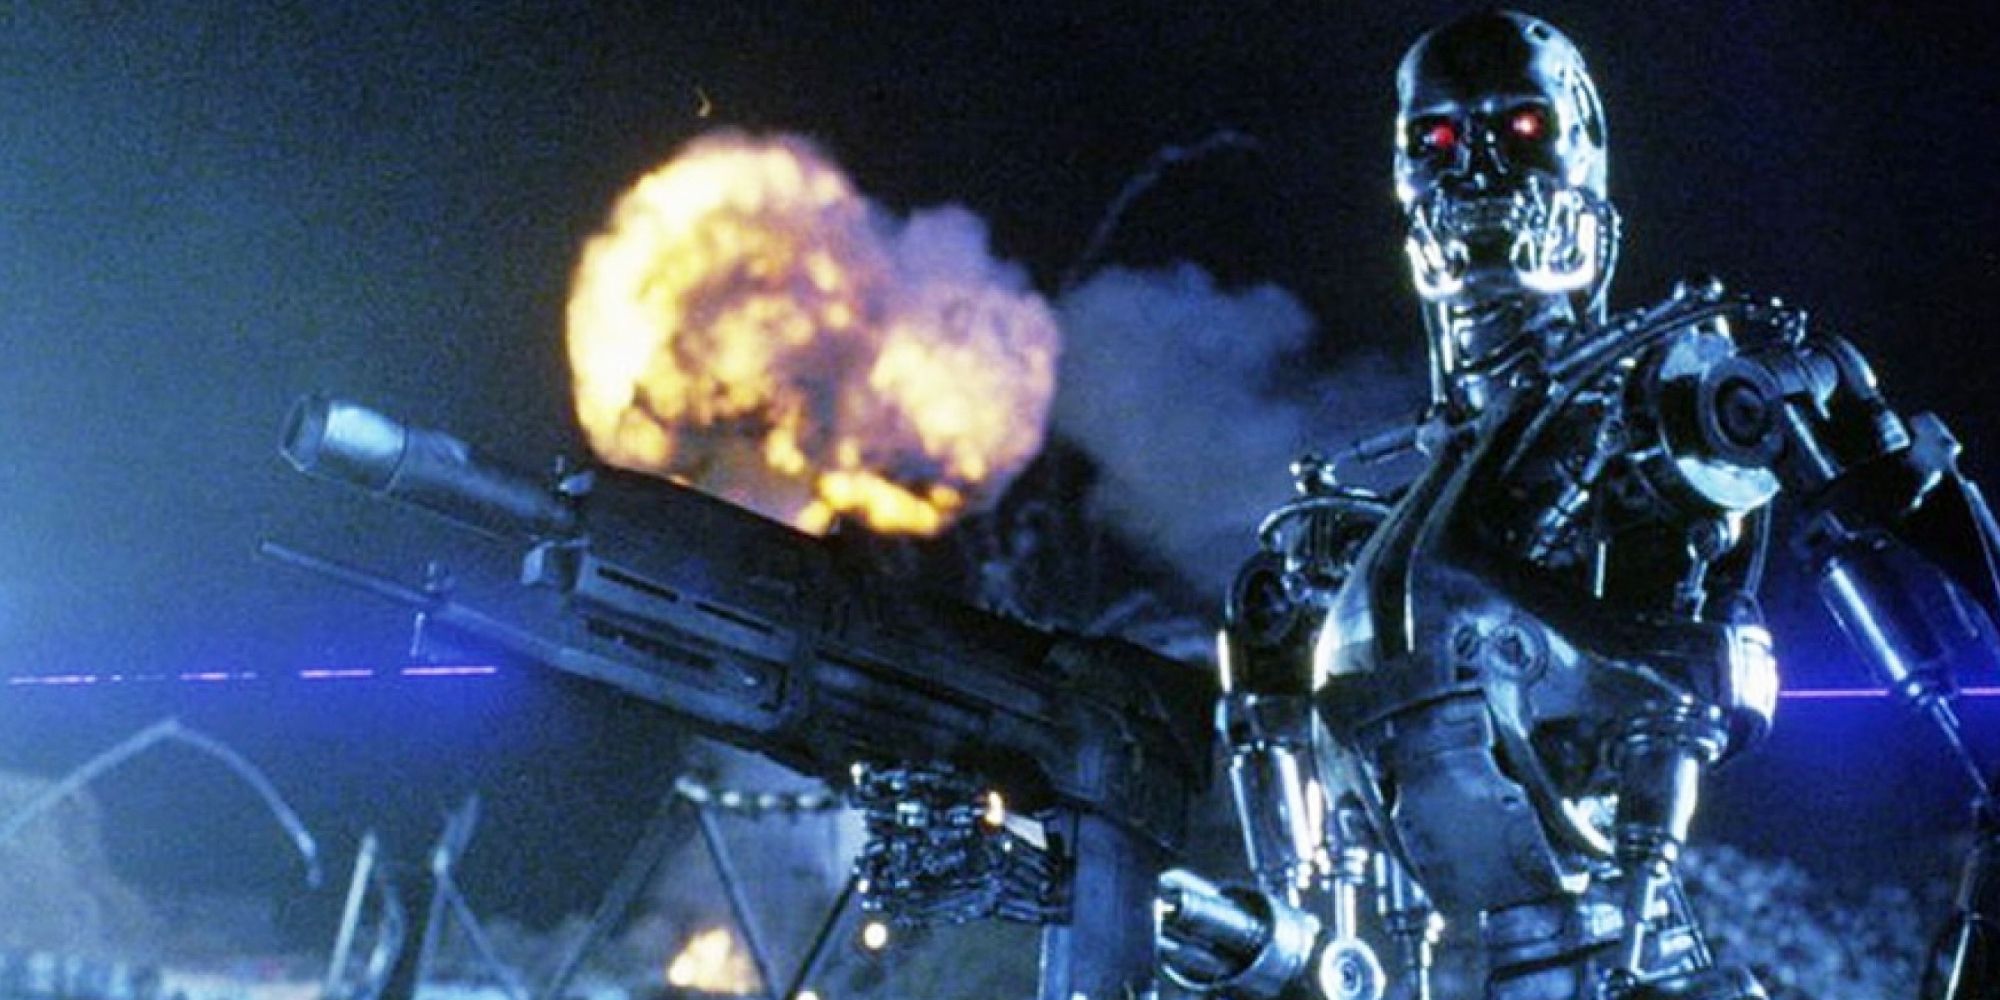 O futuro (2029) em Terminator 2 - Judgment Day - 1991